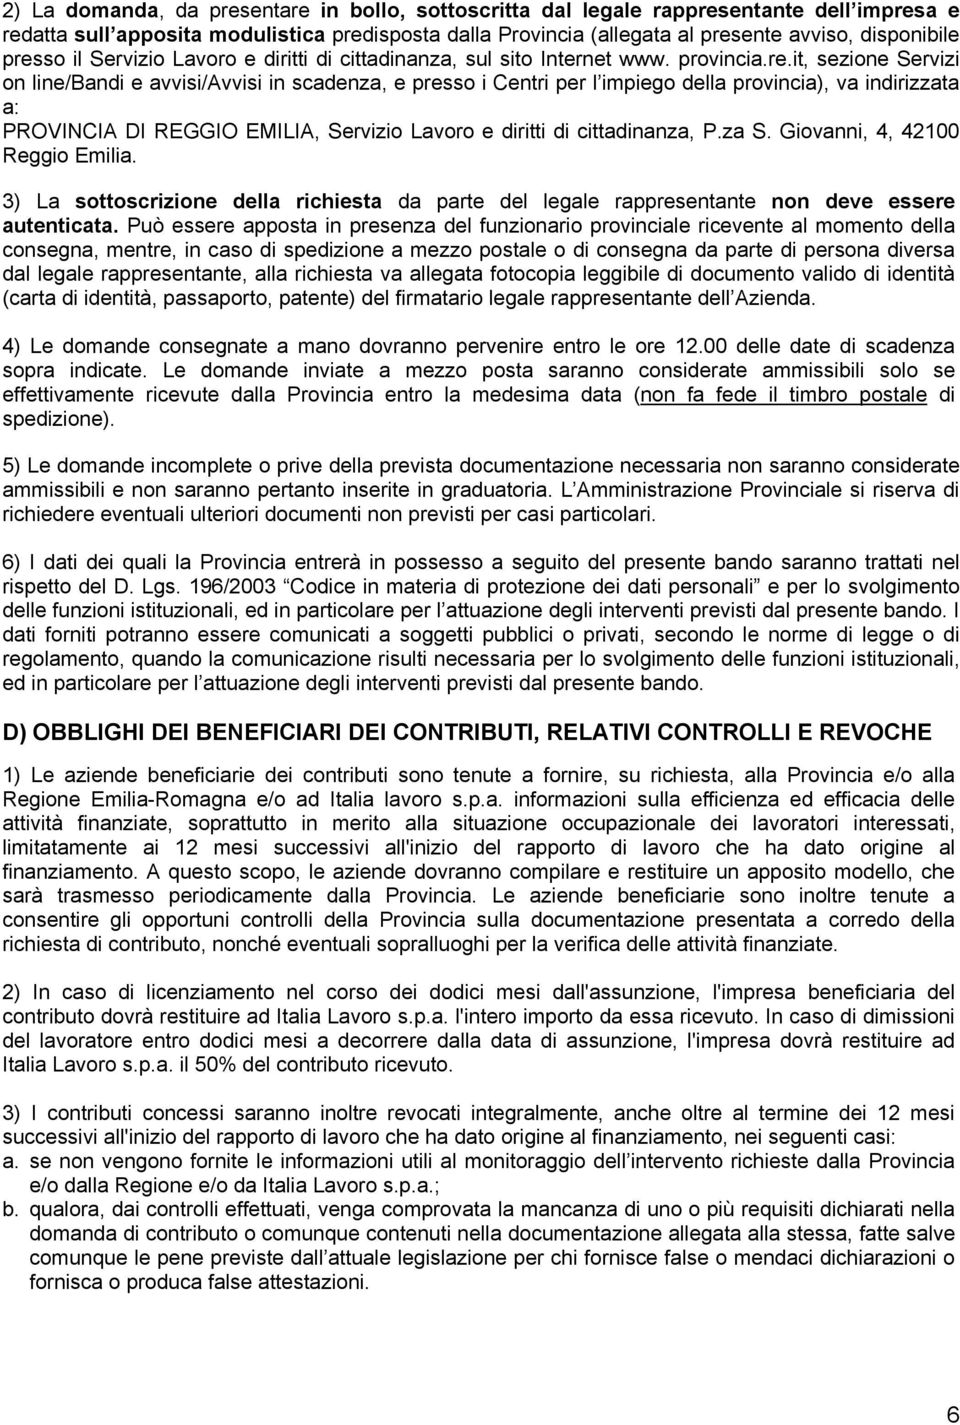 provincia), va indirizzata a: PROVINCIA DI REGGIO EMILIA, Servizio Lavoro e diritti di cittadinanza, P.za S. Giovanni, 4, 42100 Reggio Emilia.